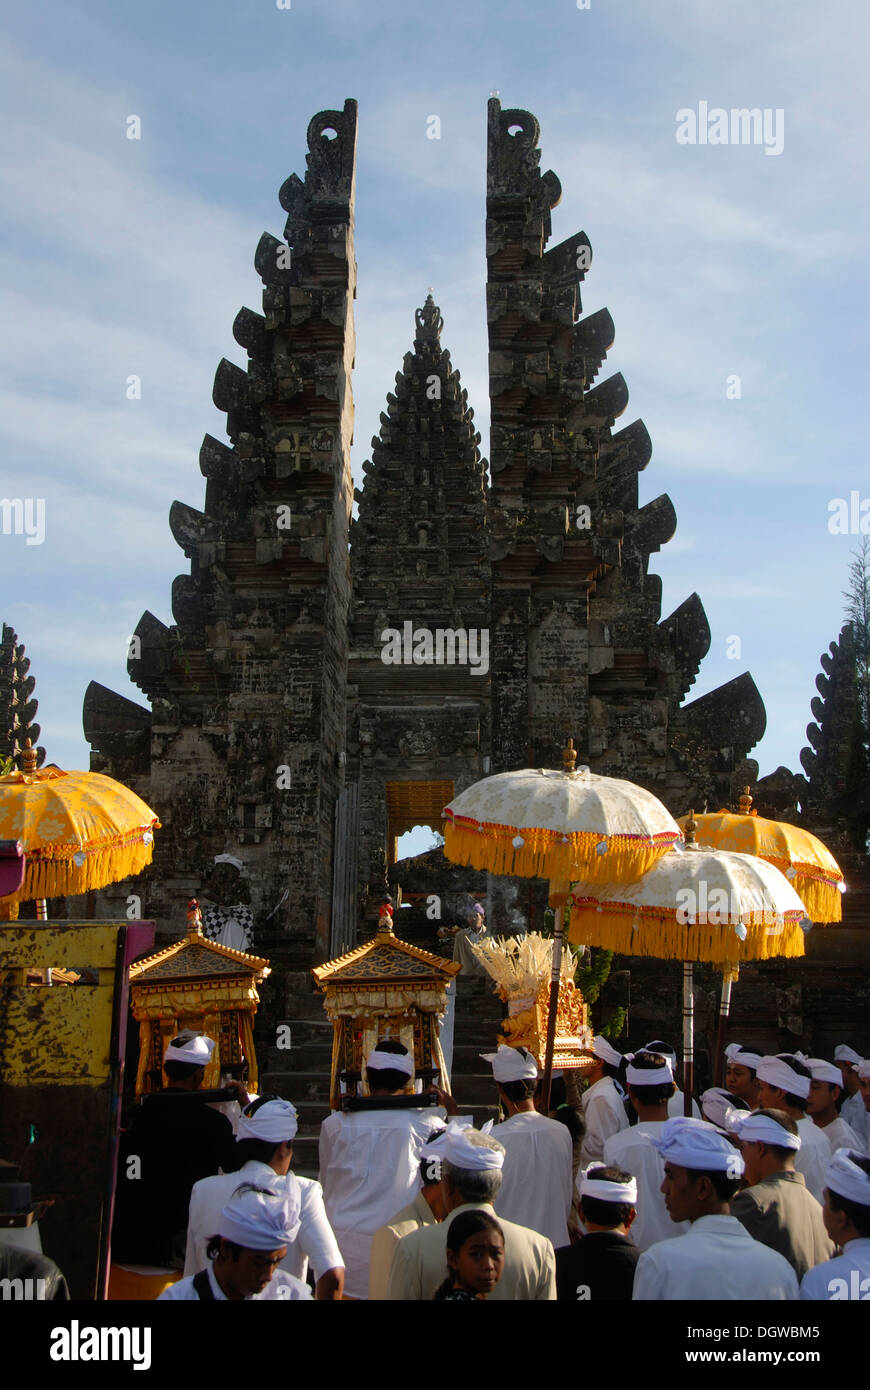 Balinesischen Hinduismus, Versammlung von Gläubigen, die Zeremonie, die Gläubigen im Tempel-Kleid mit Sonnenschirmen, Tor, Candi Bentar aufgeteilt Stockfoto